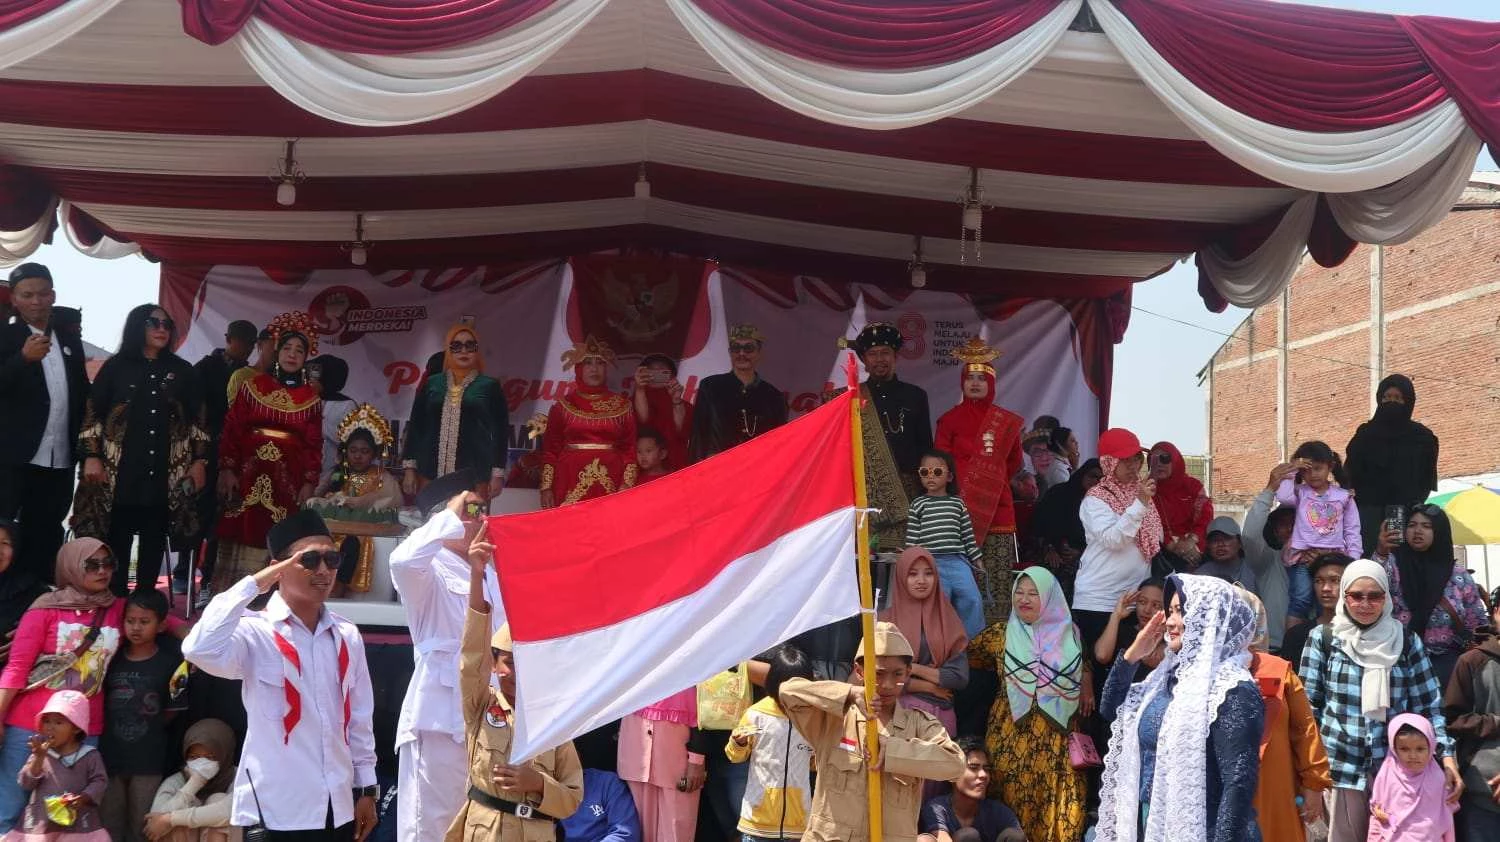 Parade Kostum Unik dan Inspiratif SD Mupat Turut Meriahkan Karnaval Kelurahan Mojolangu